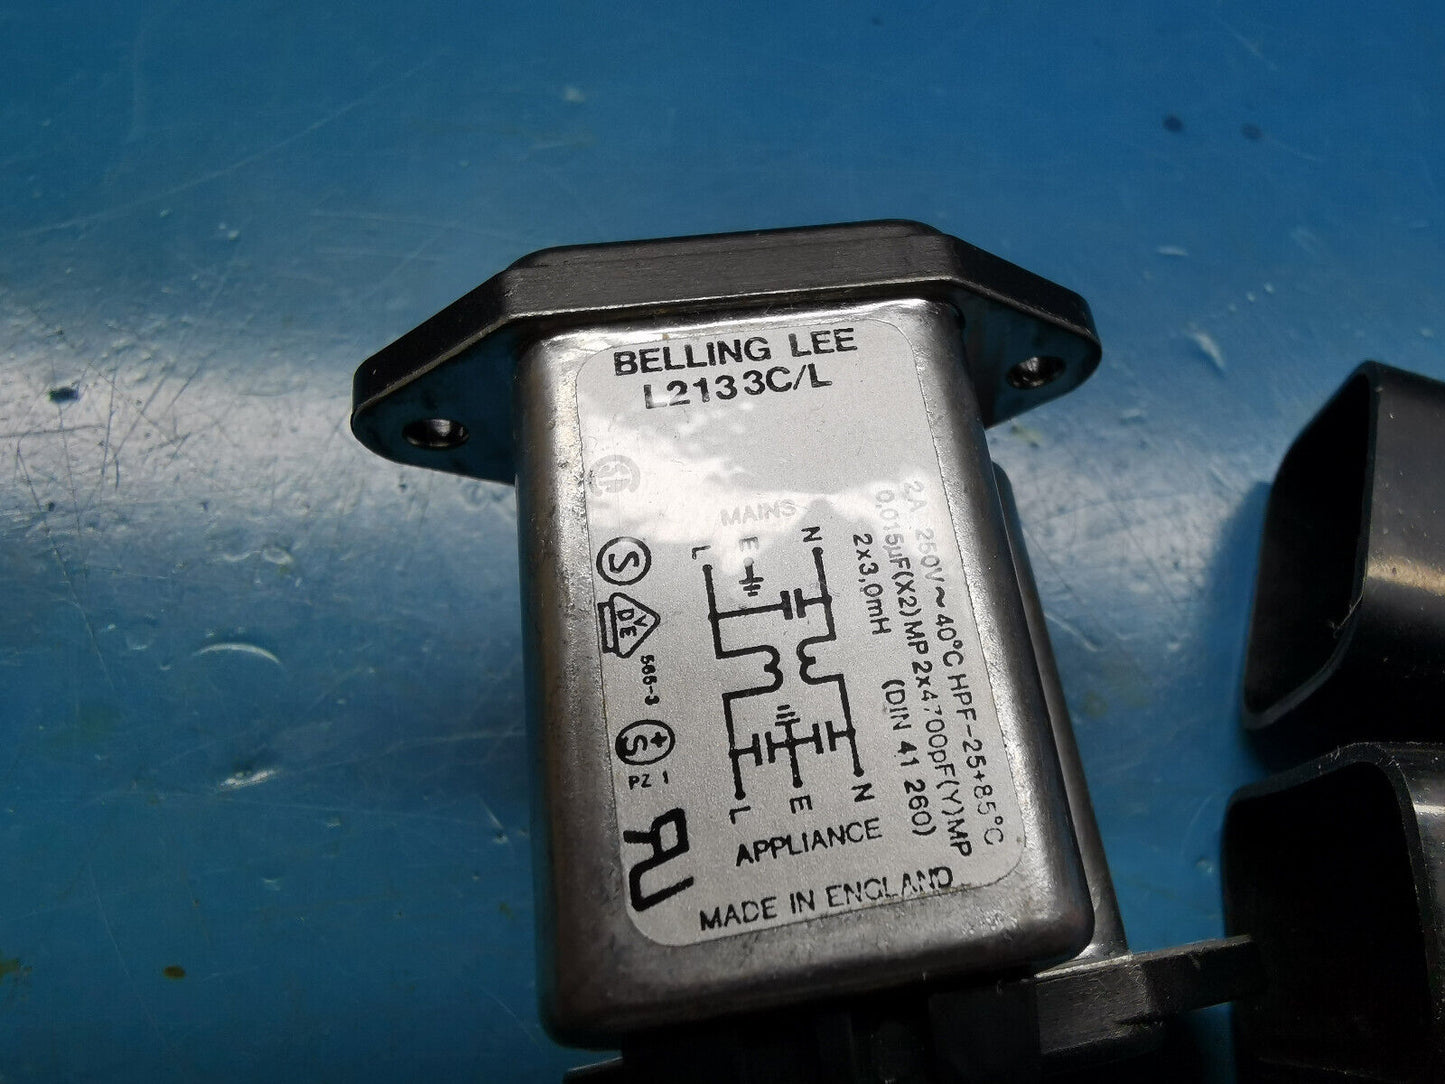 2pcs Mains Inlet Filter 250v 2A Belling Lee L213 3C/L